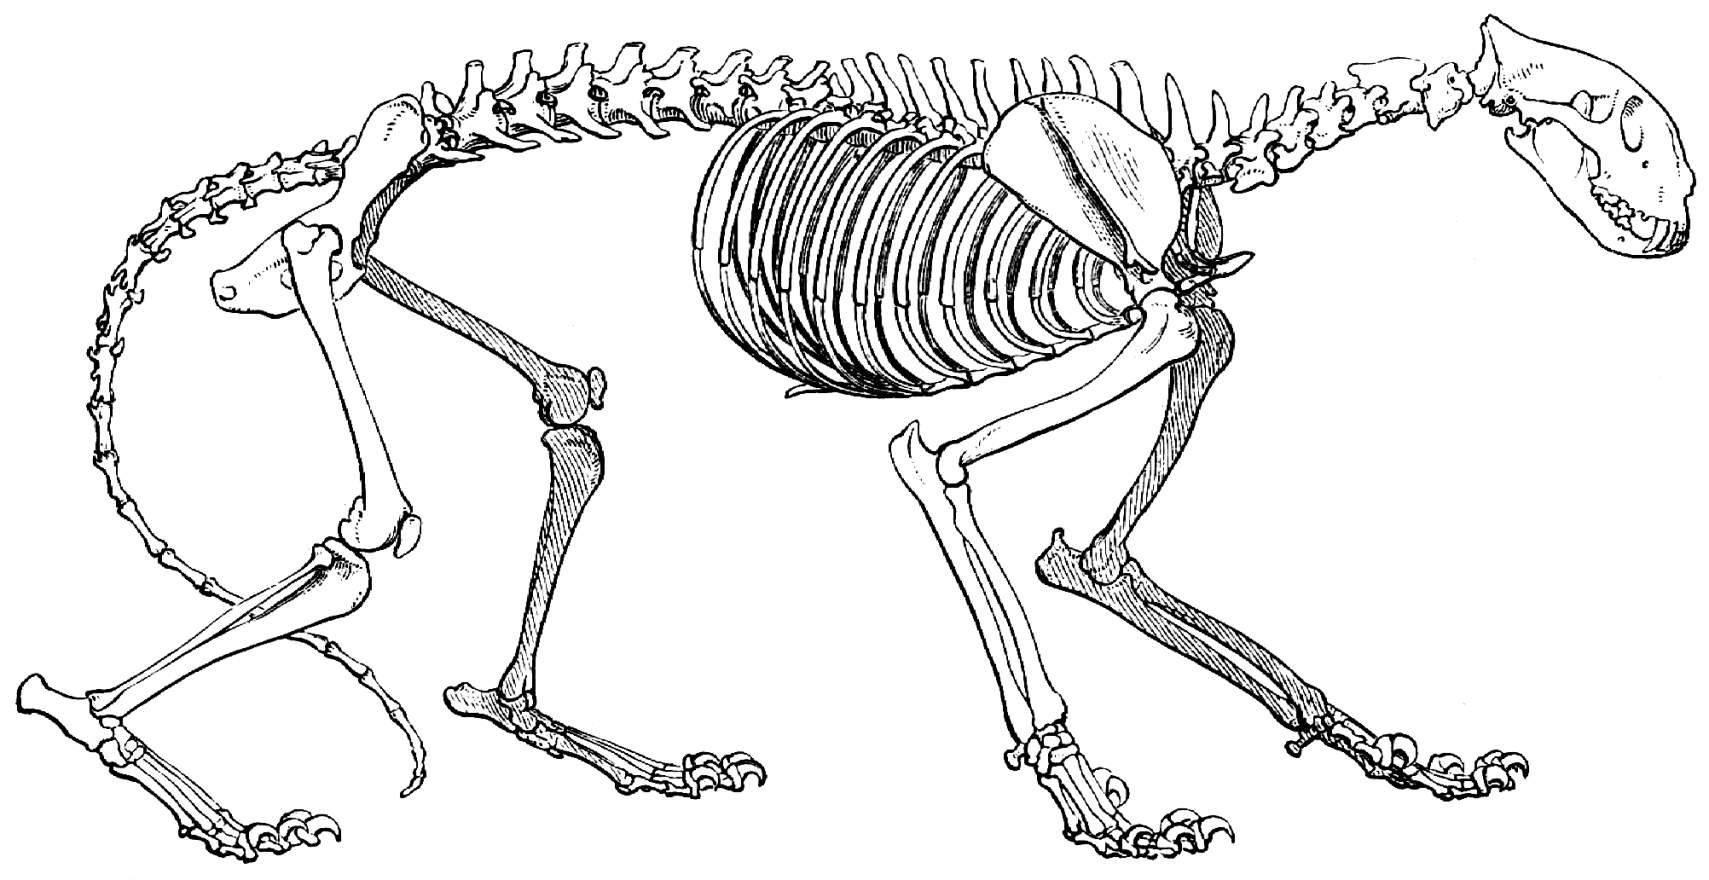 Скелет рыси строение